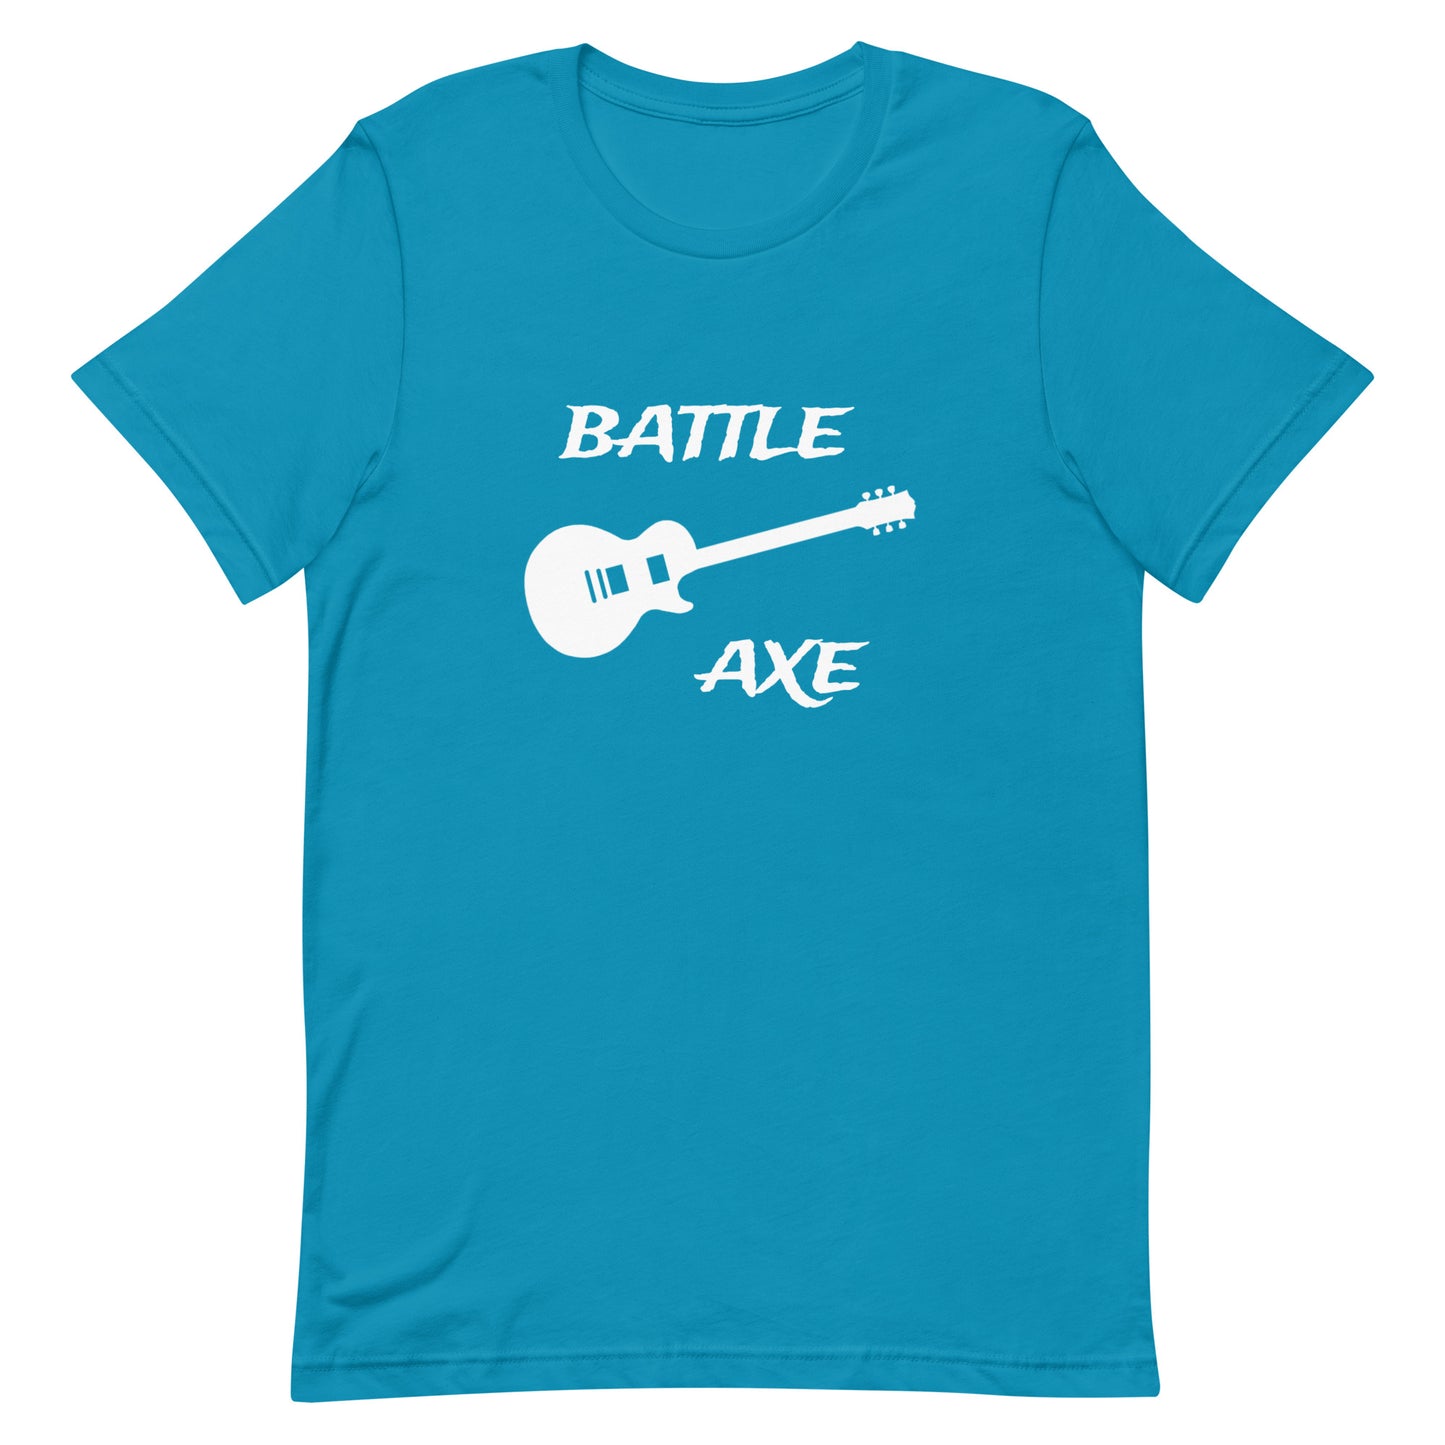 Battleaxe 2